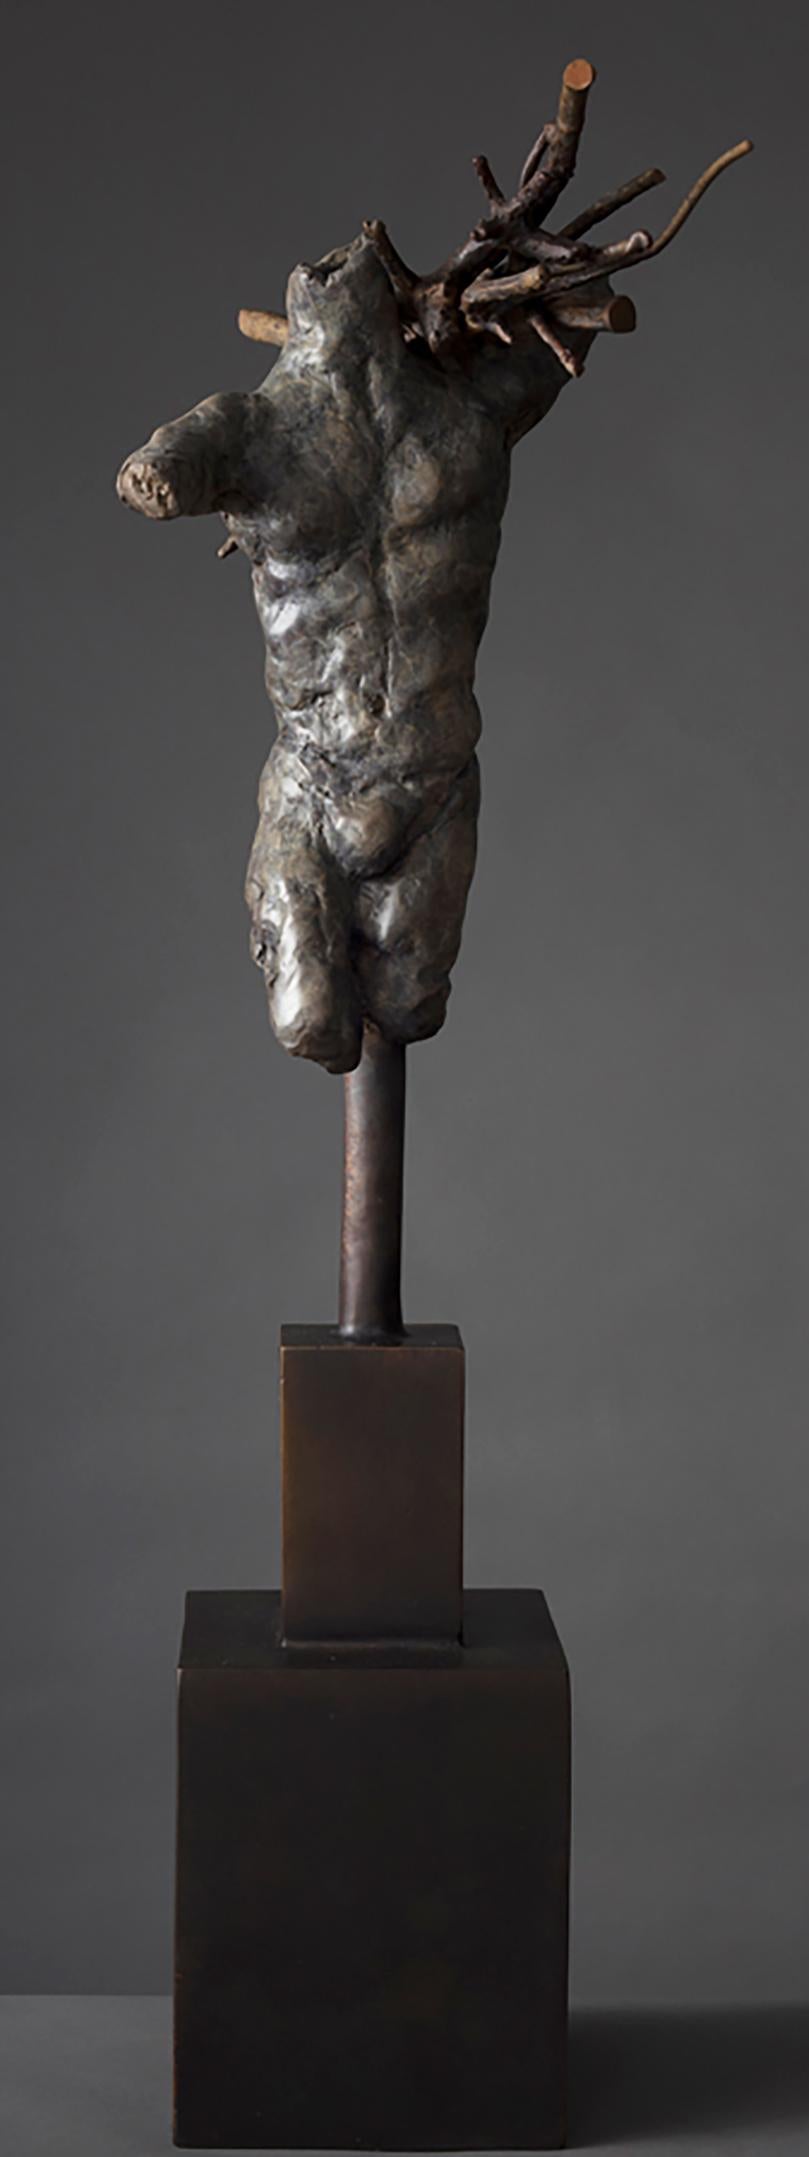 Cueilleur - Sculpture de Rod Oneglia